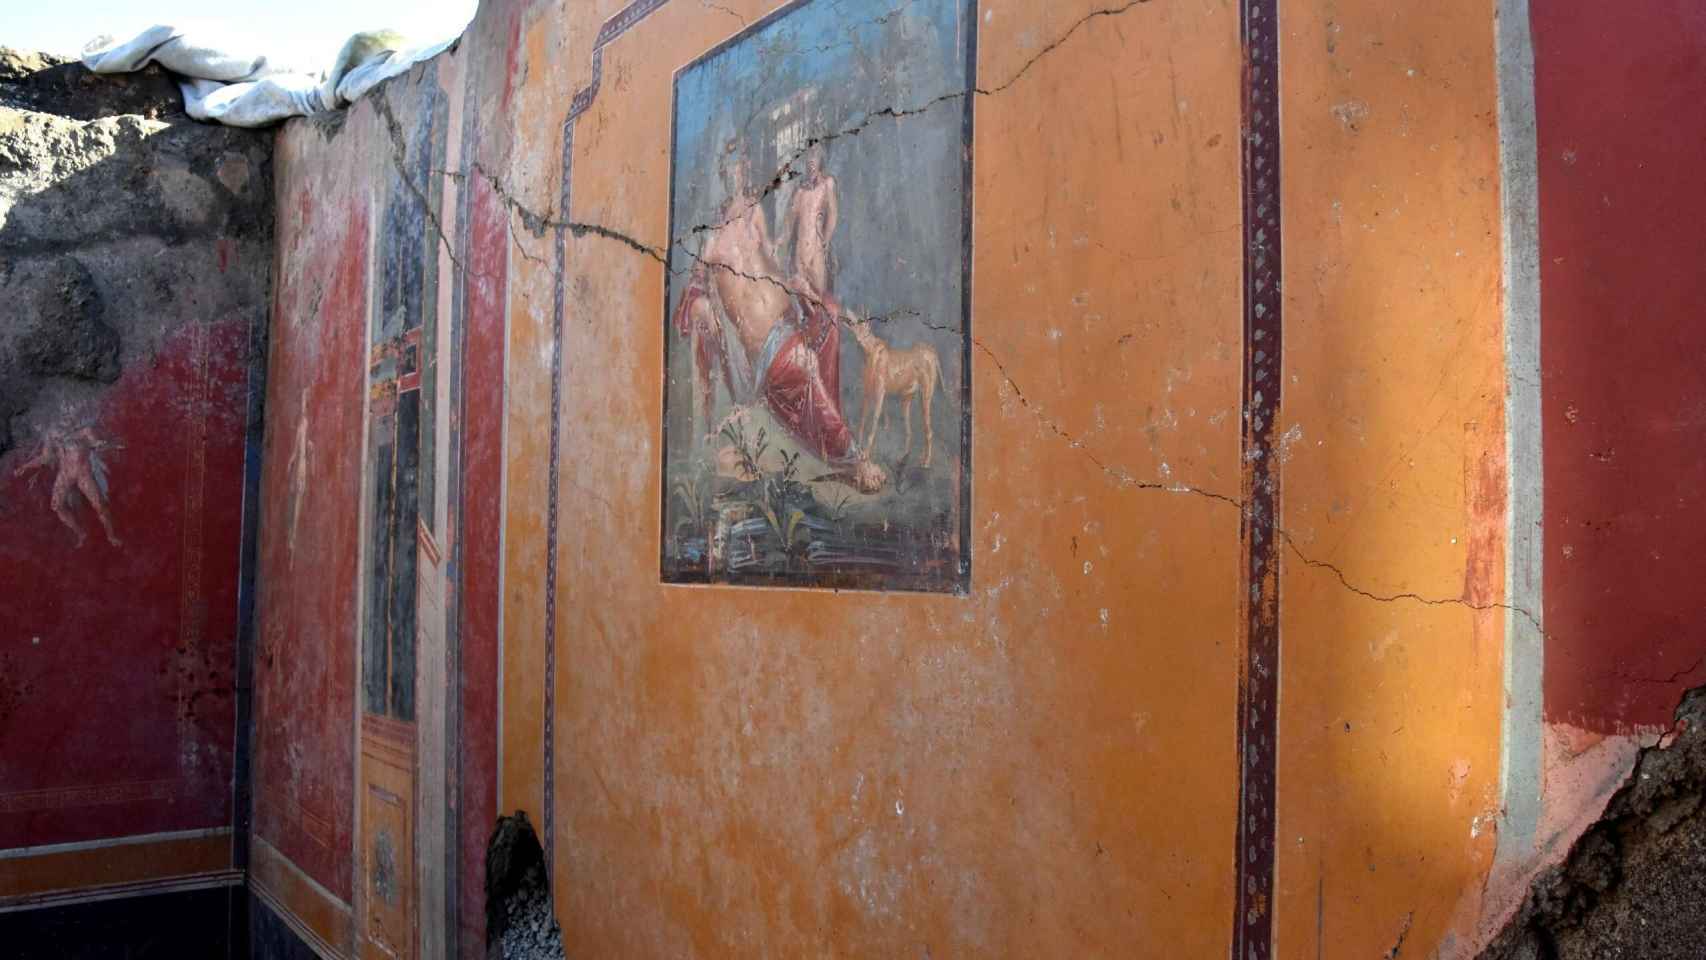 Vista de un fresco que representa el mito de la belleza de Narciso descubierto en Pompeya.